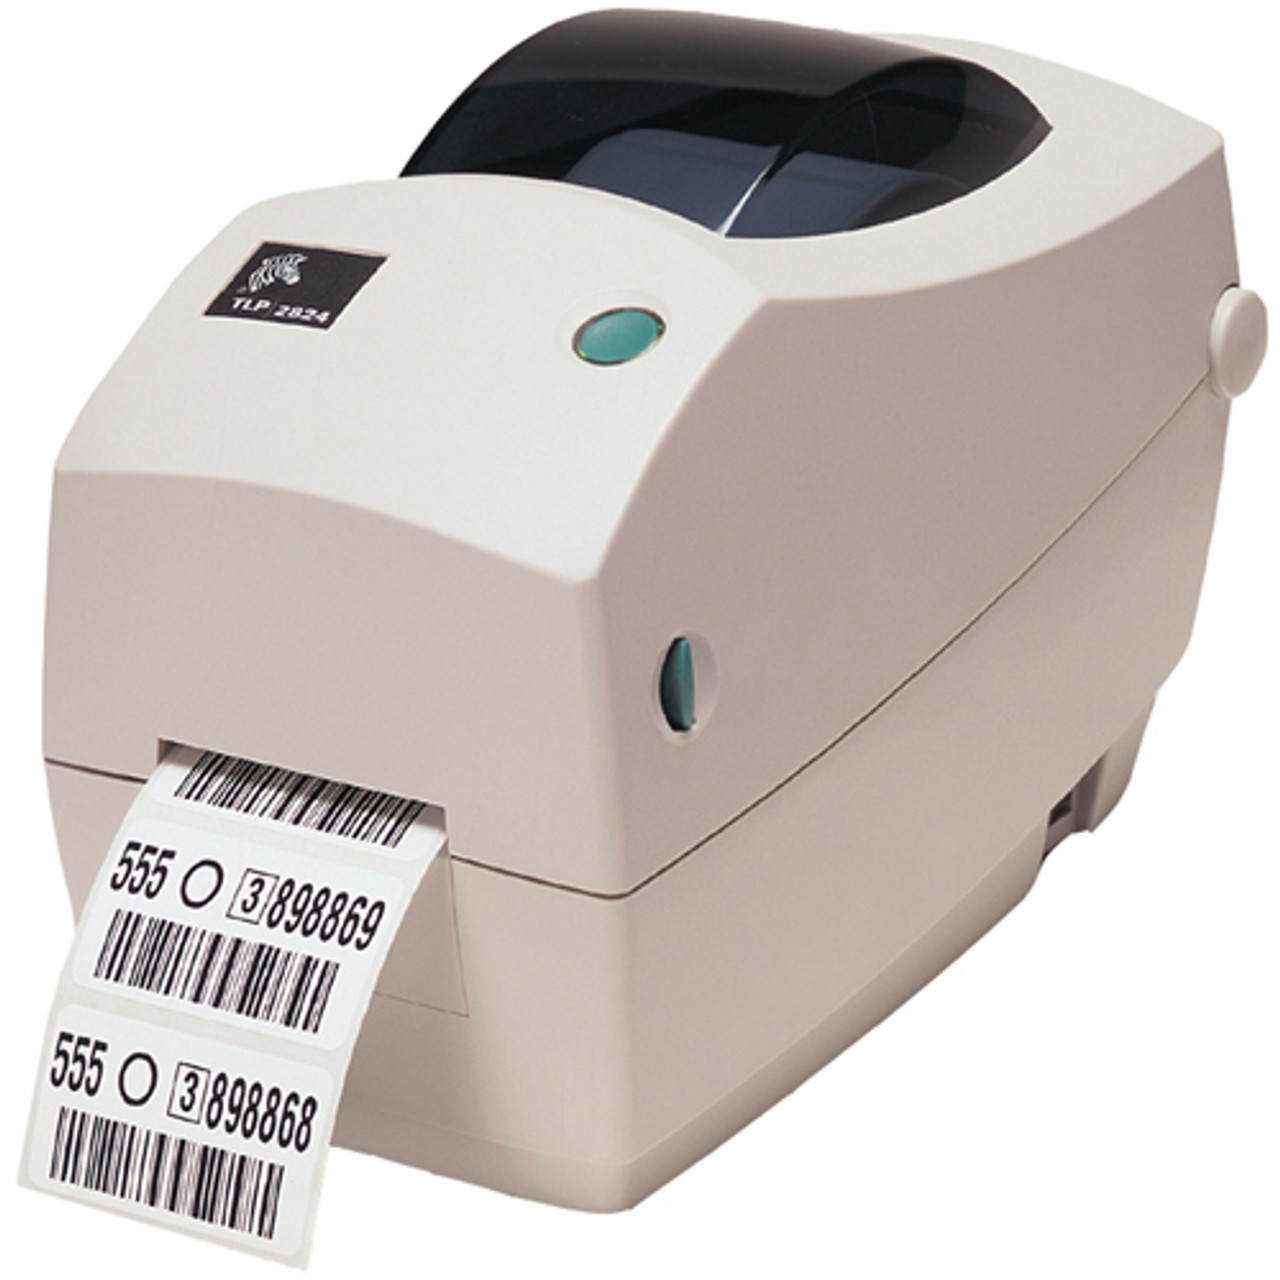 Zebra TLP 2824 Plus Thermal Label Printer 282P-101510-000